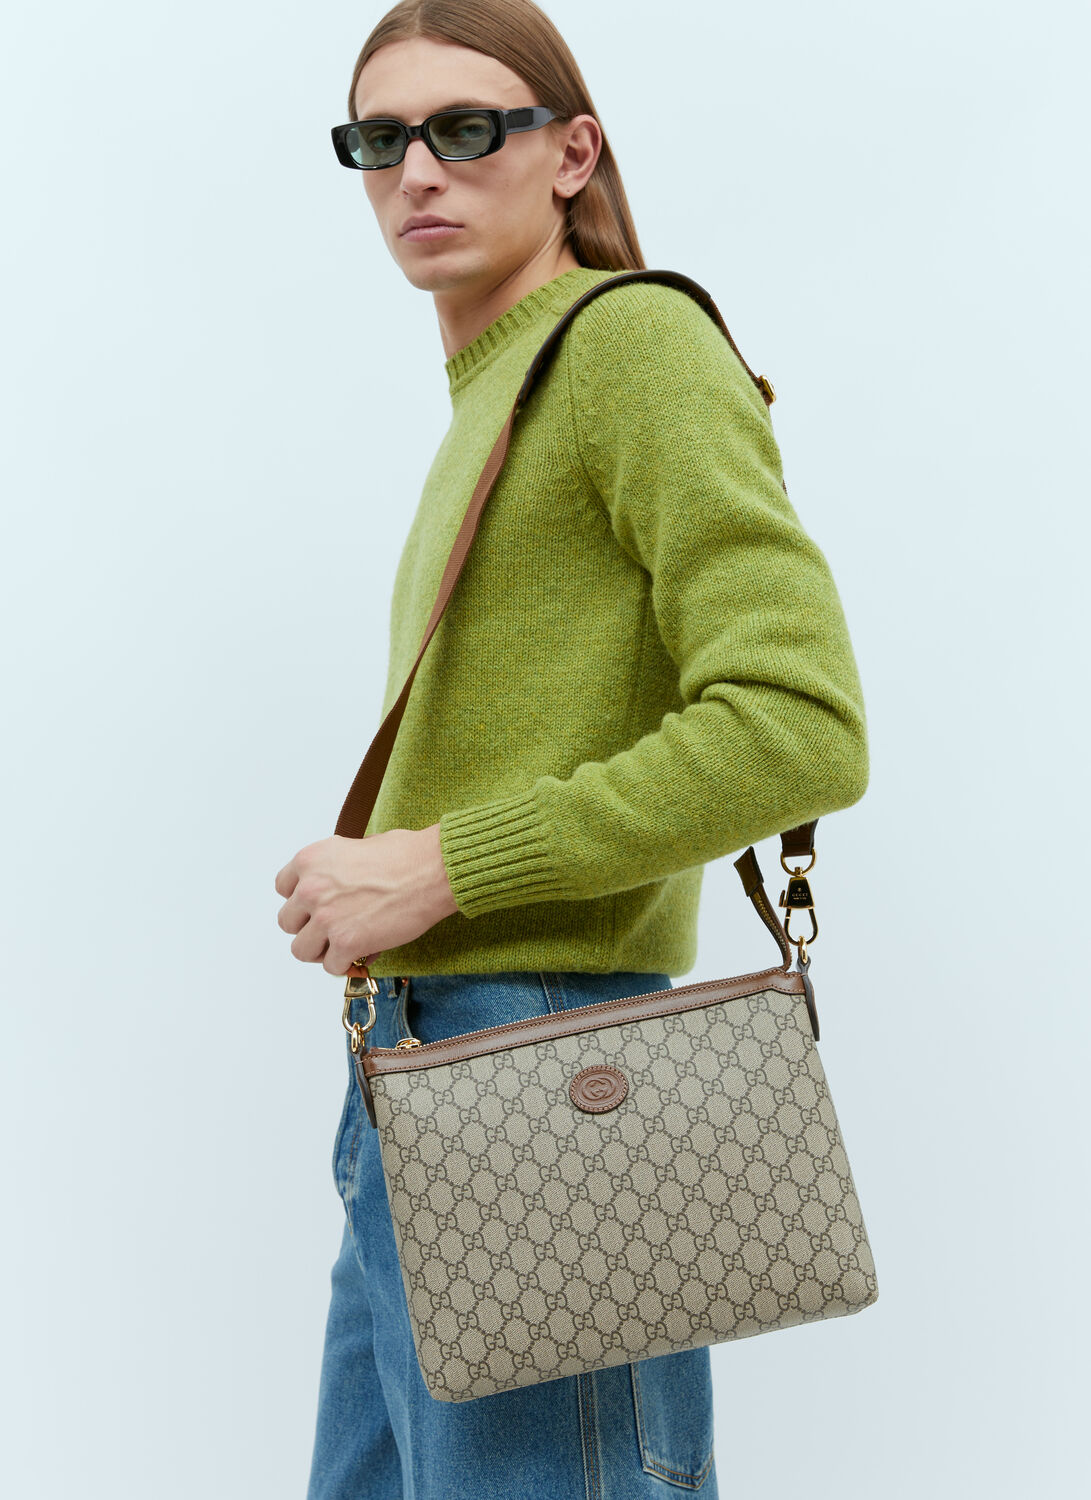 Gucci Messenger Bag With Interlocking G In Beige